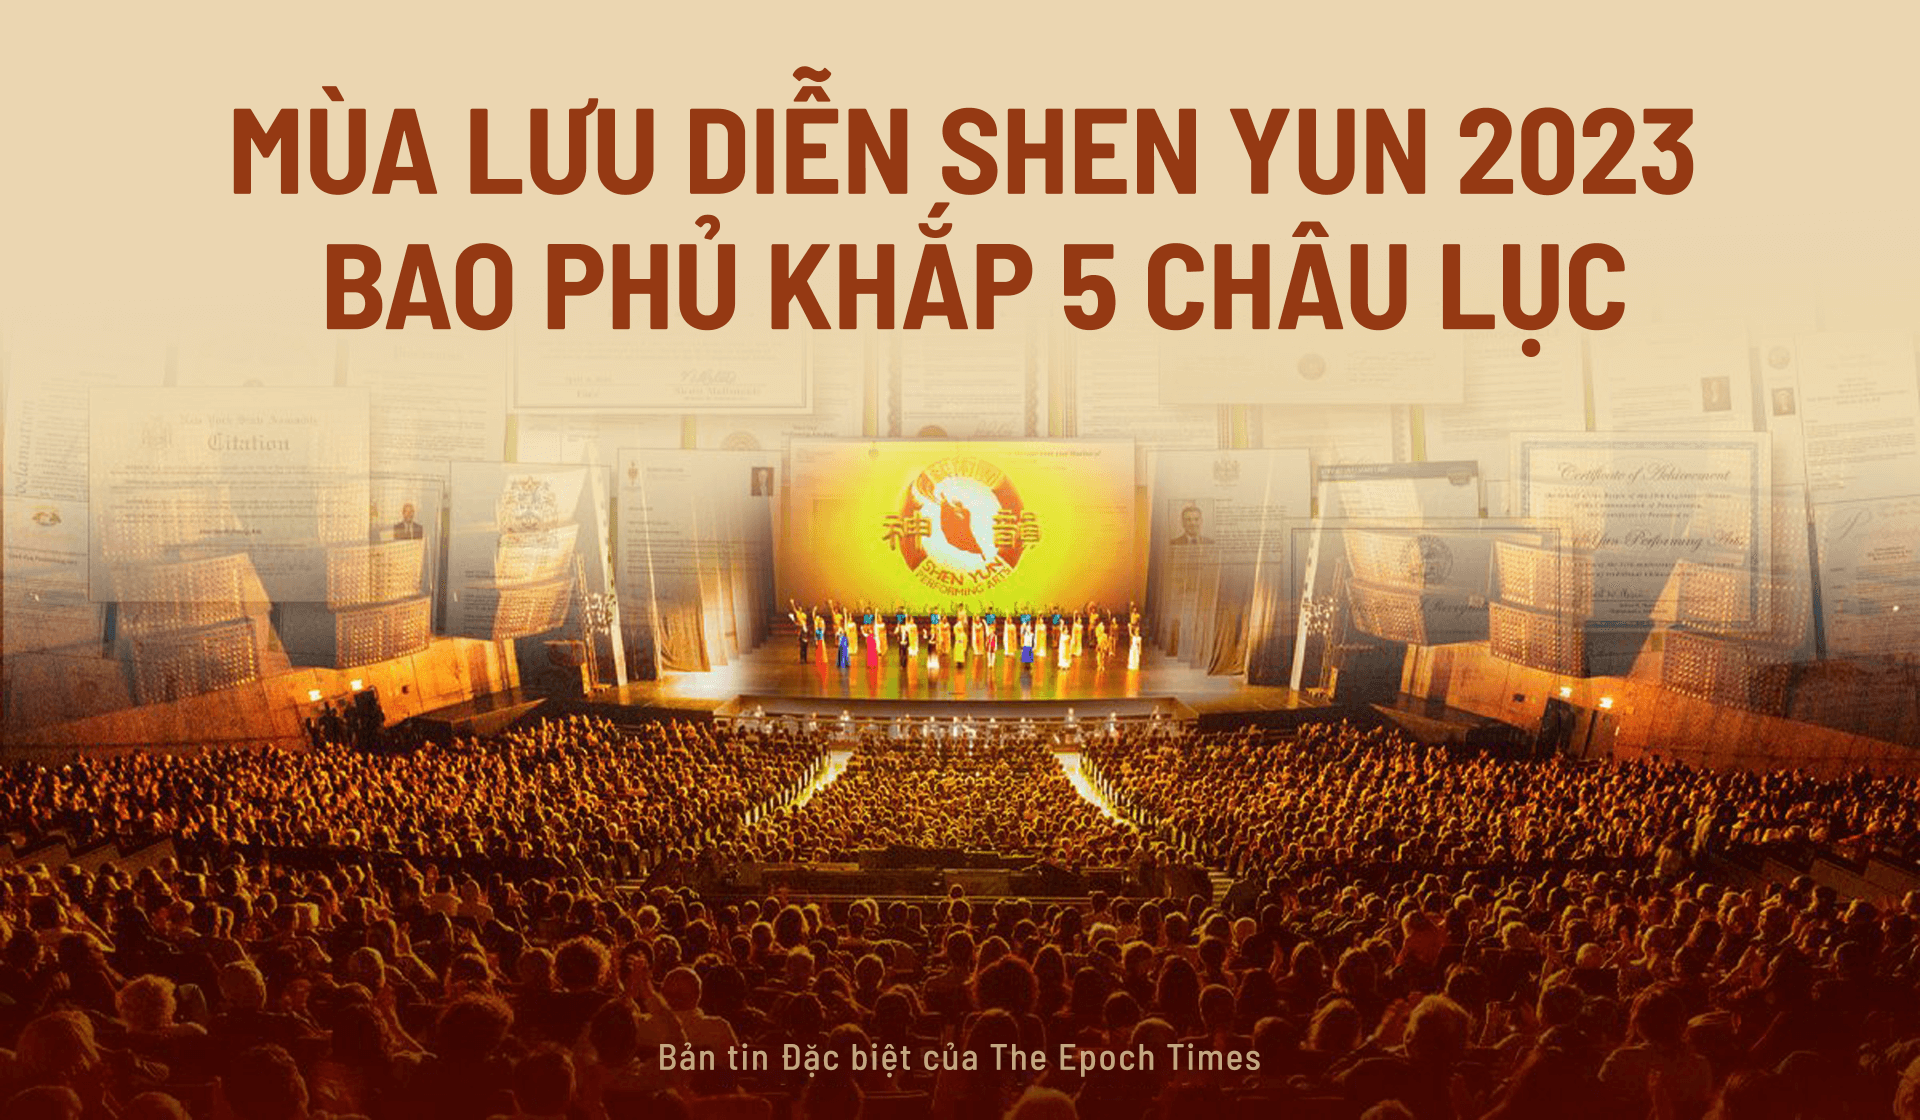 MÙA LƯU DIỄN SHEN YUN 2023 BAO PHỦ ĐỊA CẦU